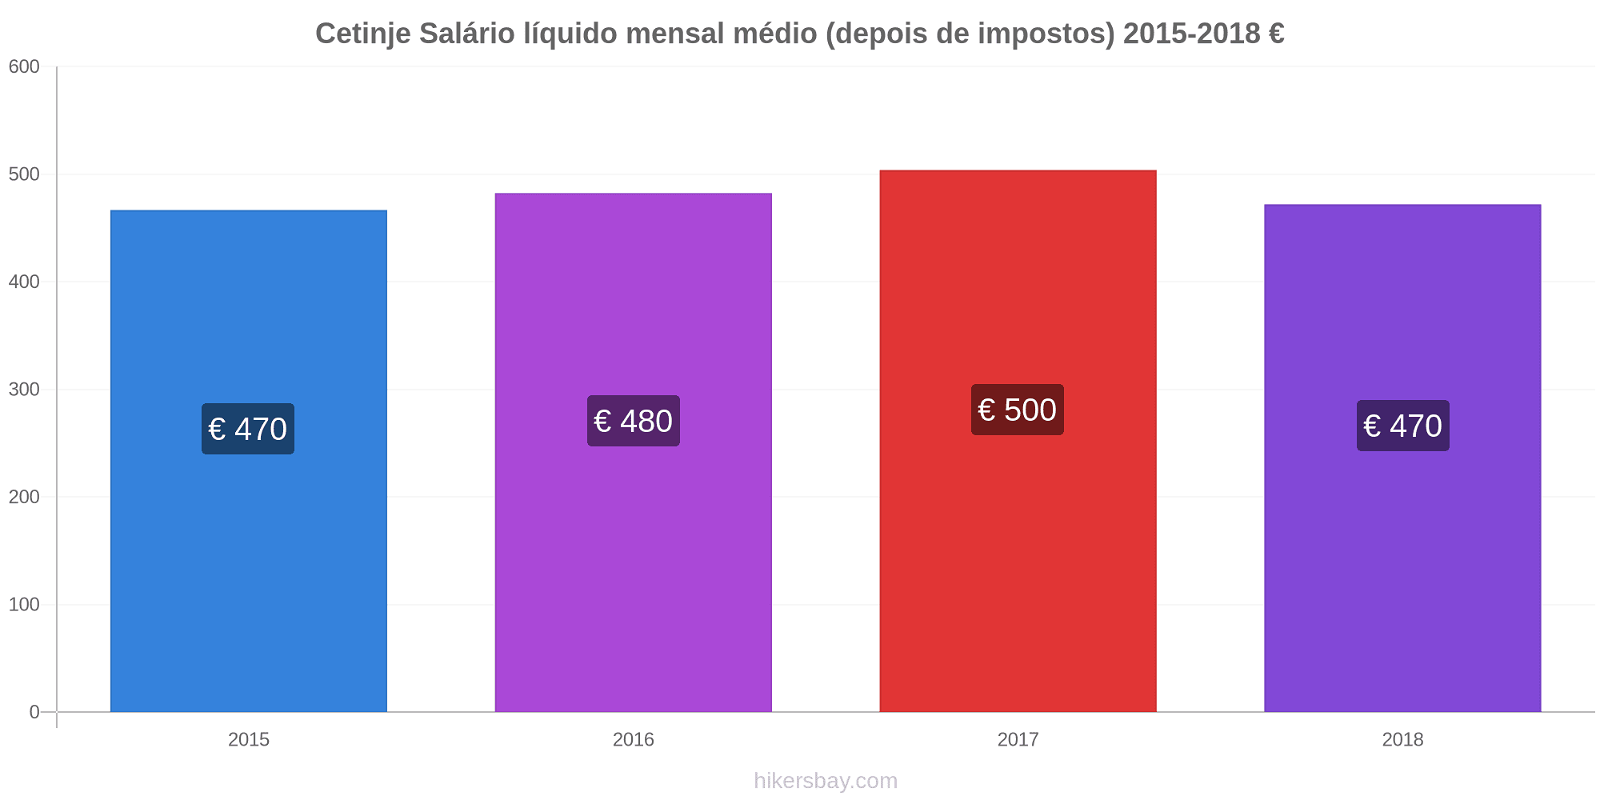 Cetinje variação de preço Salário líquido mensal médio (depois de impostos) hikersbay.com